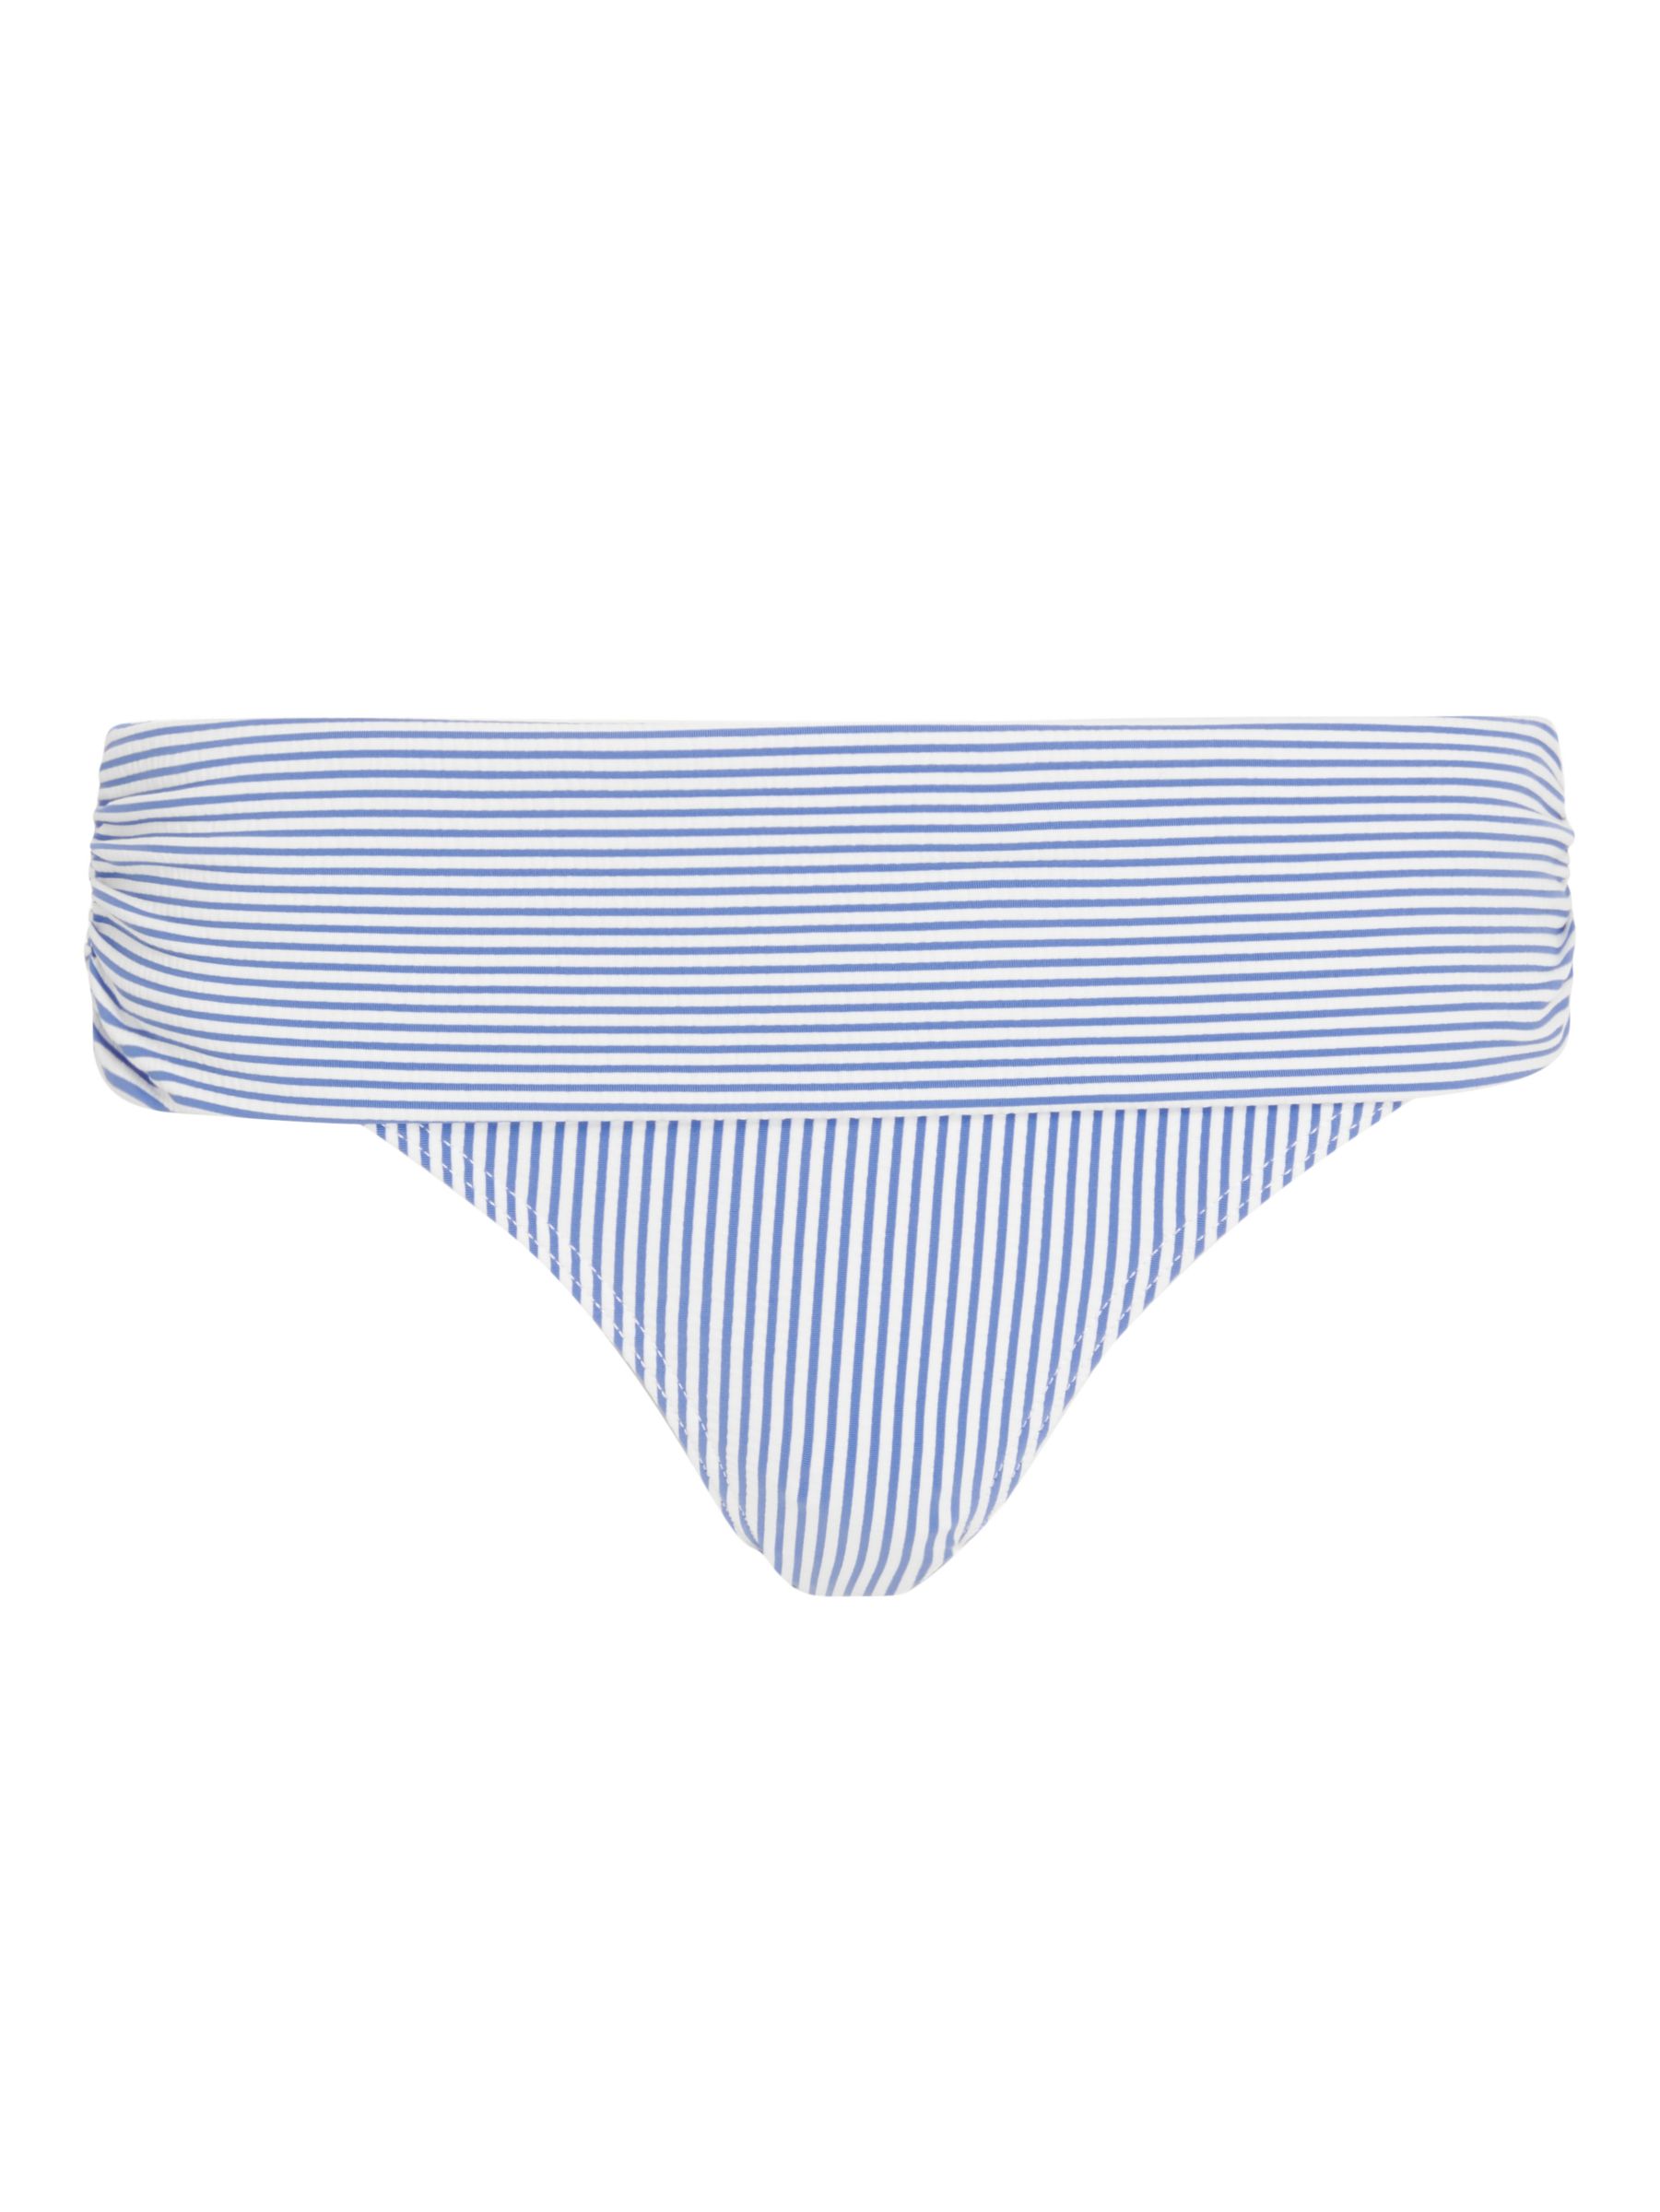 John Lewis St Tropez Fold Down Bikini Bottoms, Blue, 8